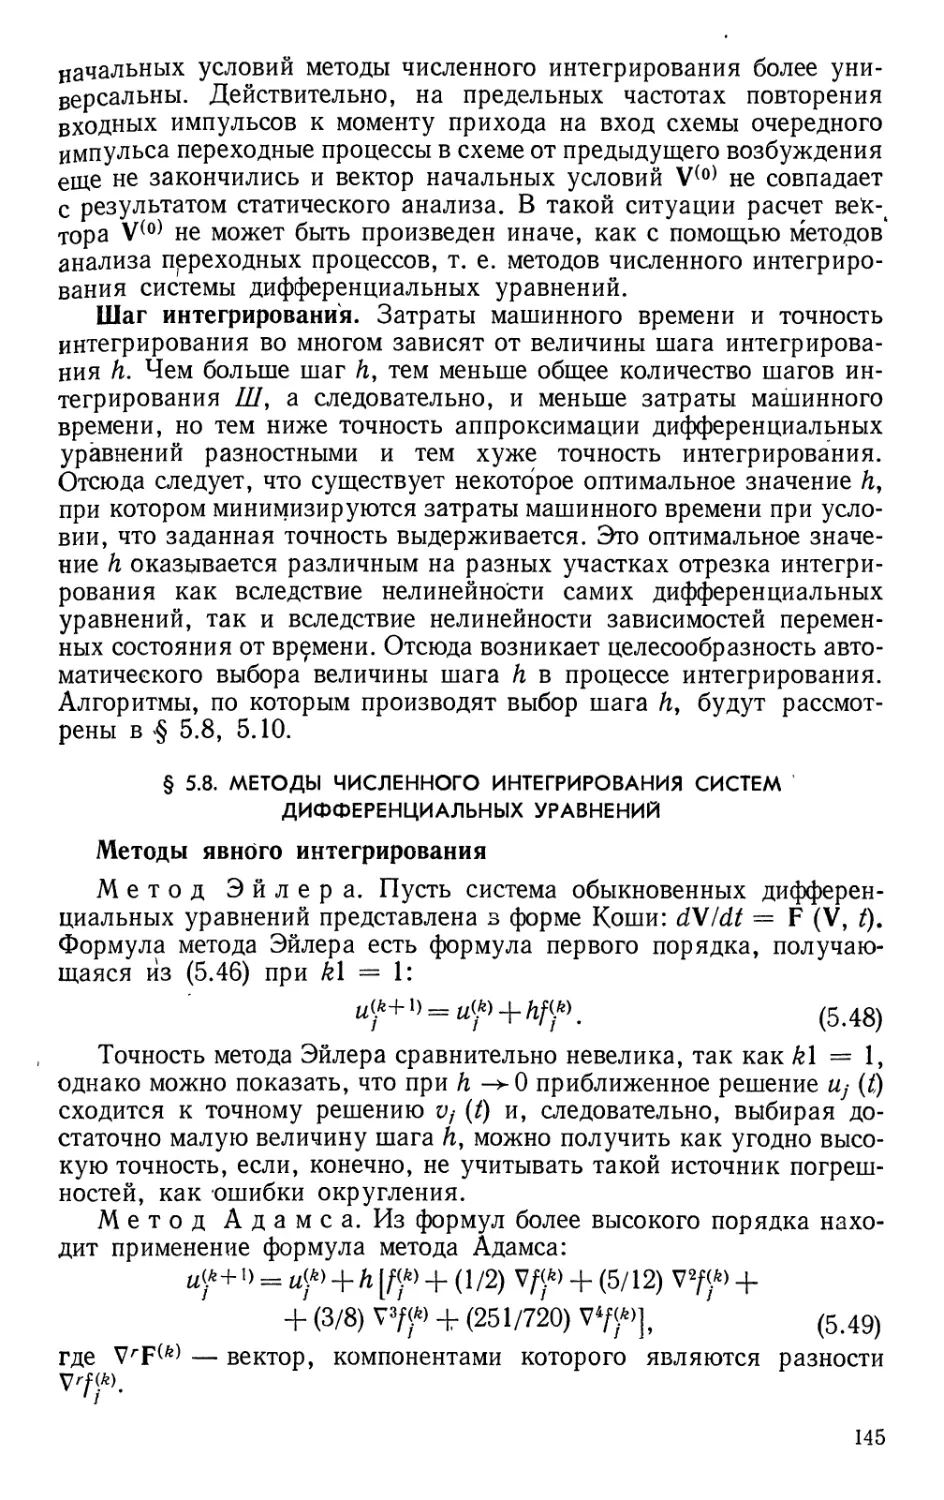 §5.8. Методы численного интегрирования систем дифференциальных уравнений